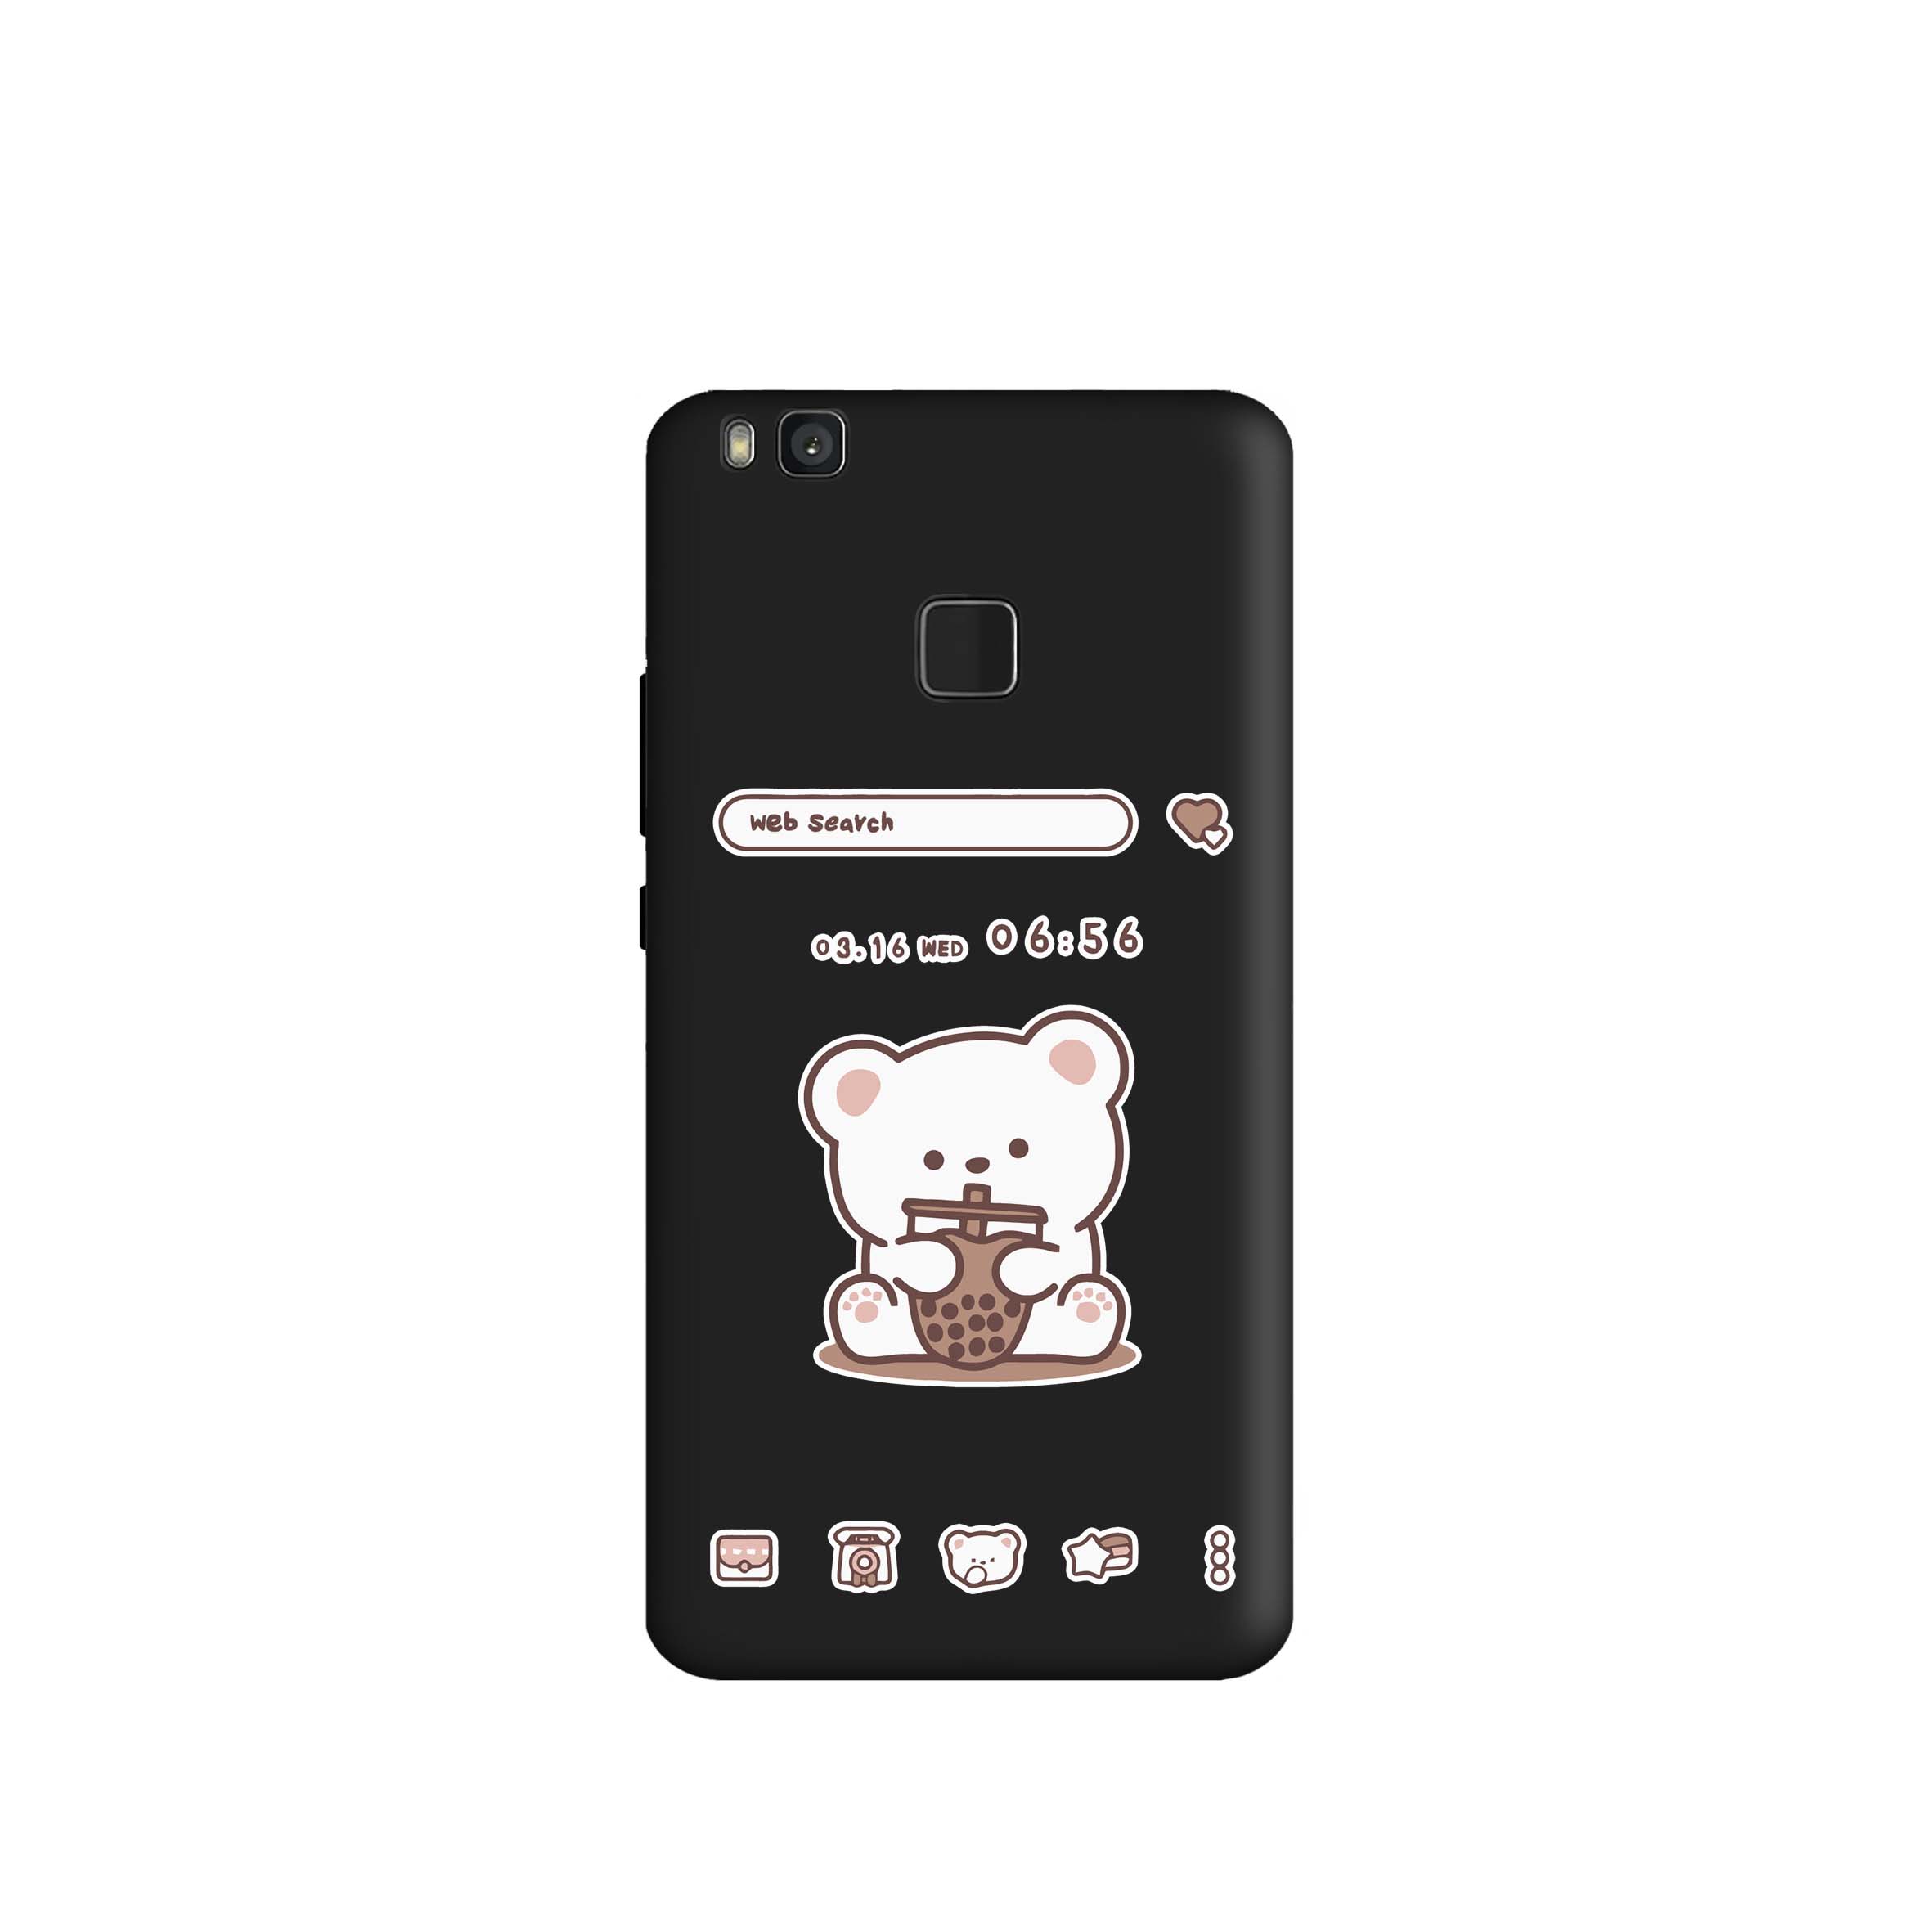 کاور طرح خرس اسموتی کد m3526 مناسب برای گوشی موبایل هوآوی P9 Lite